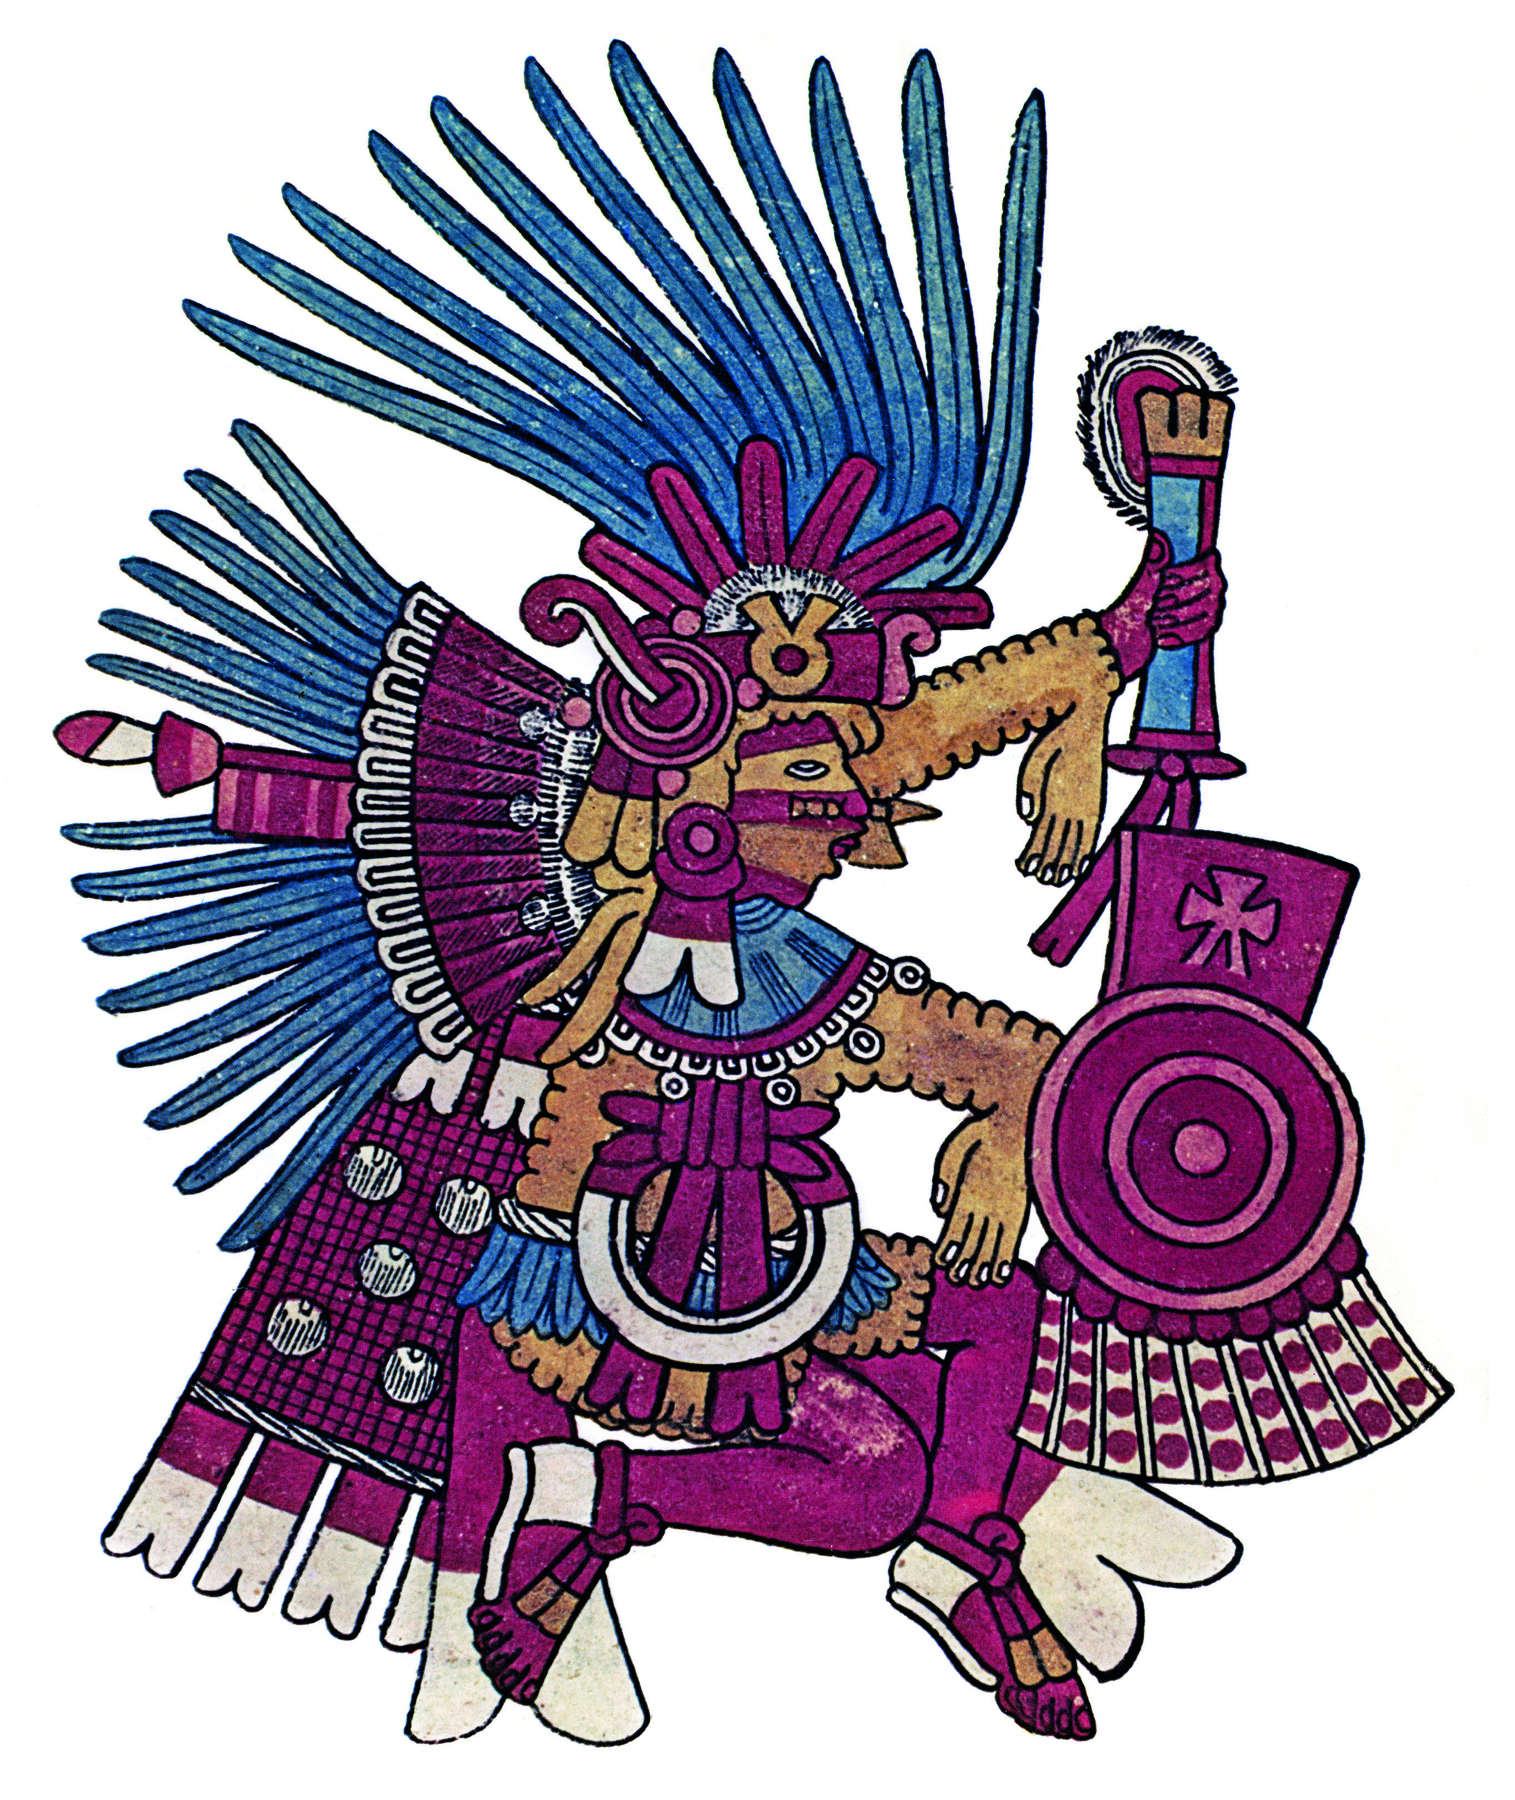 Ilustração. Deus asteca vestido e ornamentado com roupas na cor vinho e muitas penas azuis. Está com o corpo virado de lado. Tem pinturas nas mesmas cores da roupa no rosto.